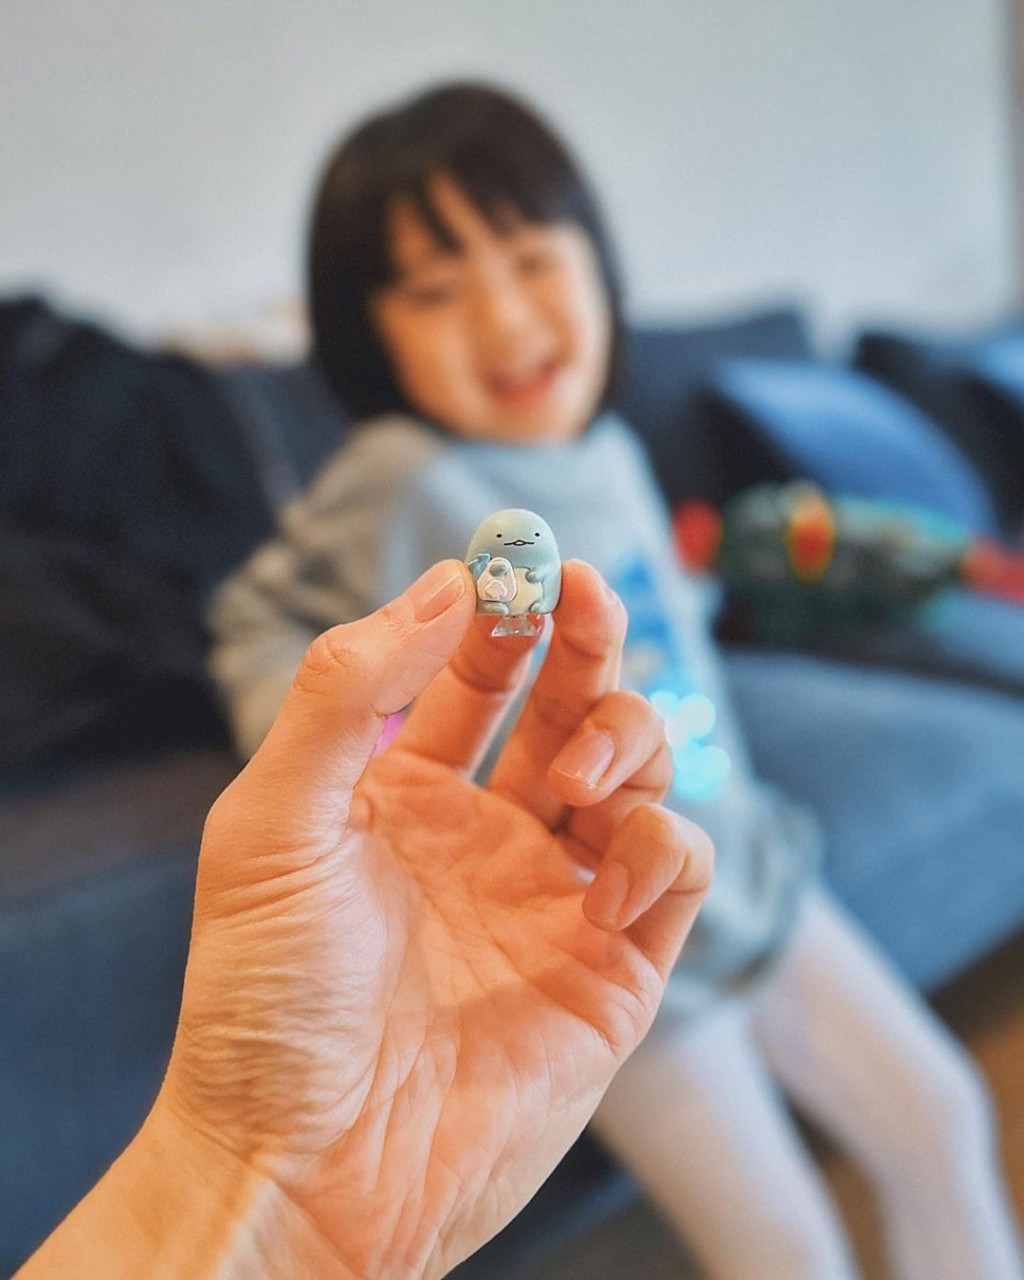 周柏豪分享愛女與玩具的合照，網民大讚囡囡可愛。